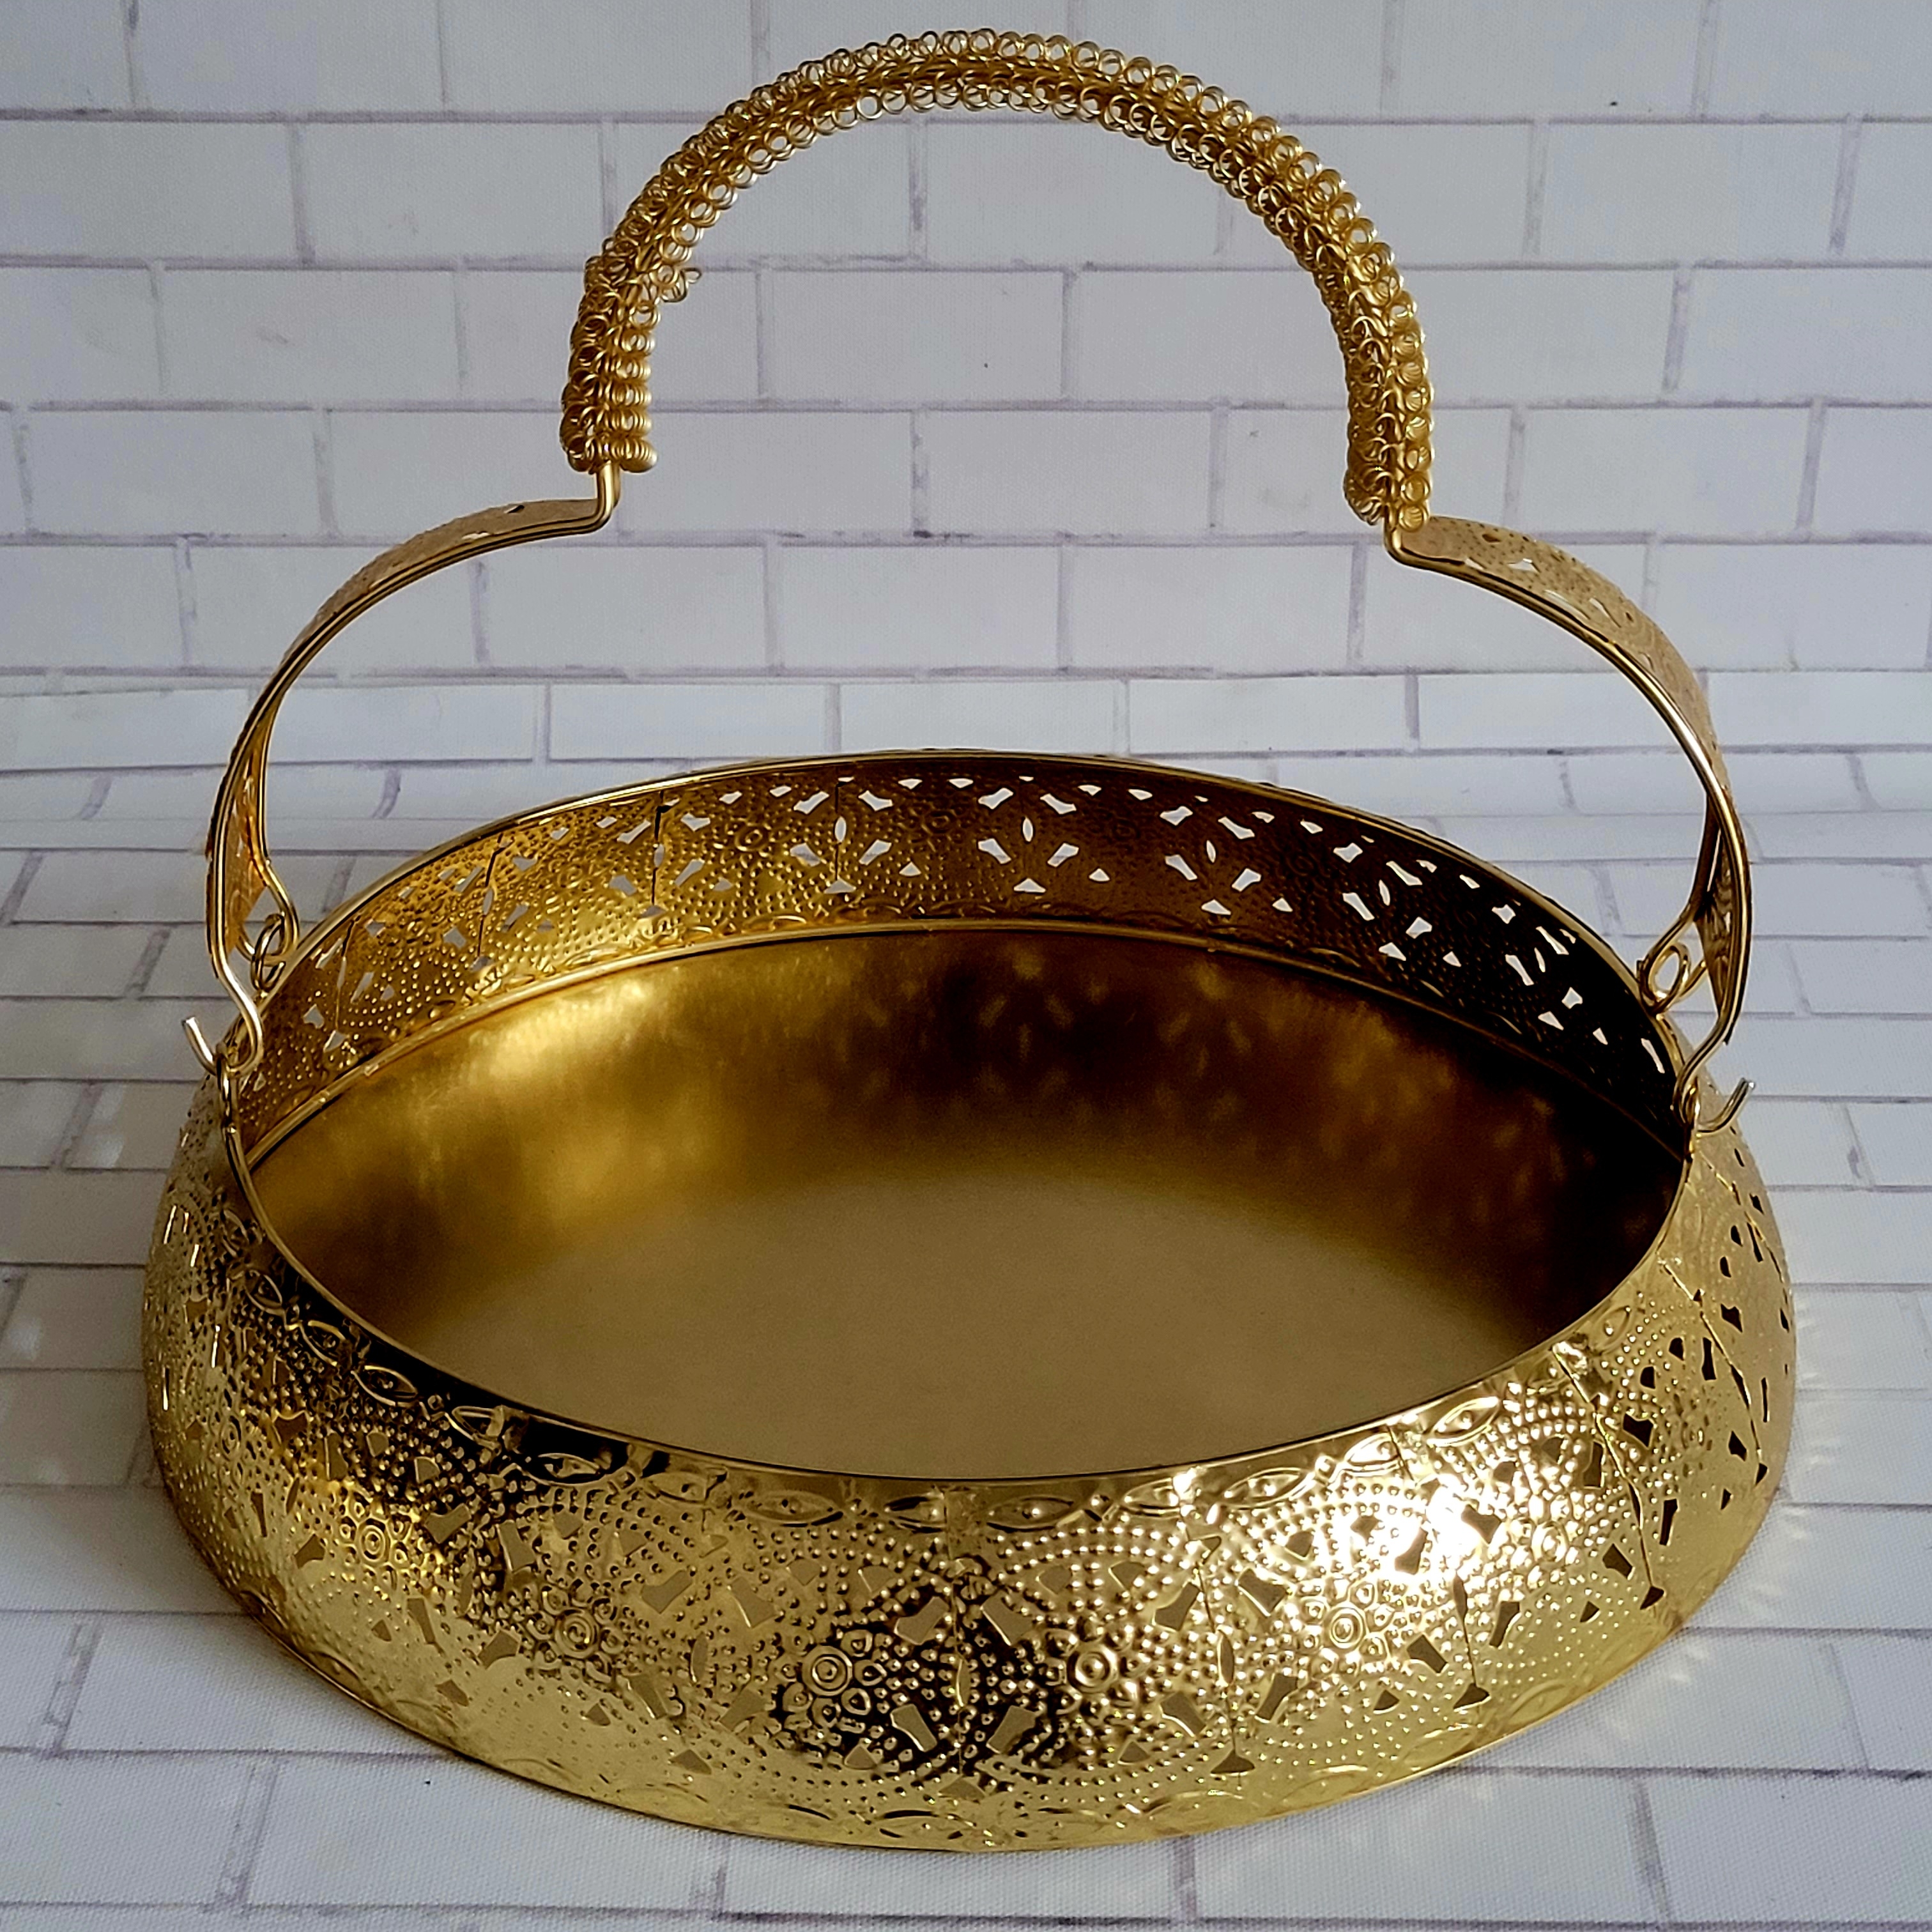 Floral art | Golden Metal Basket with Handle undefined